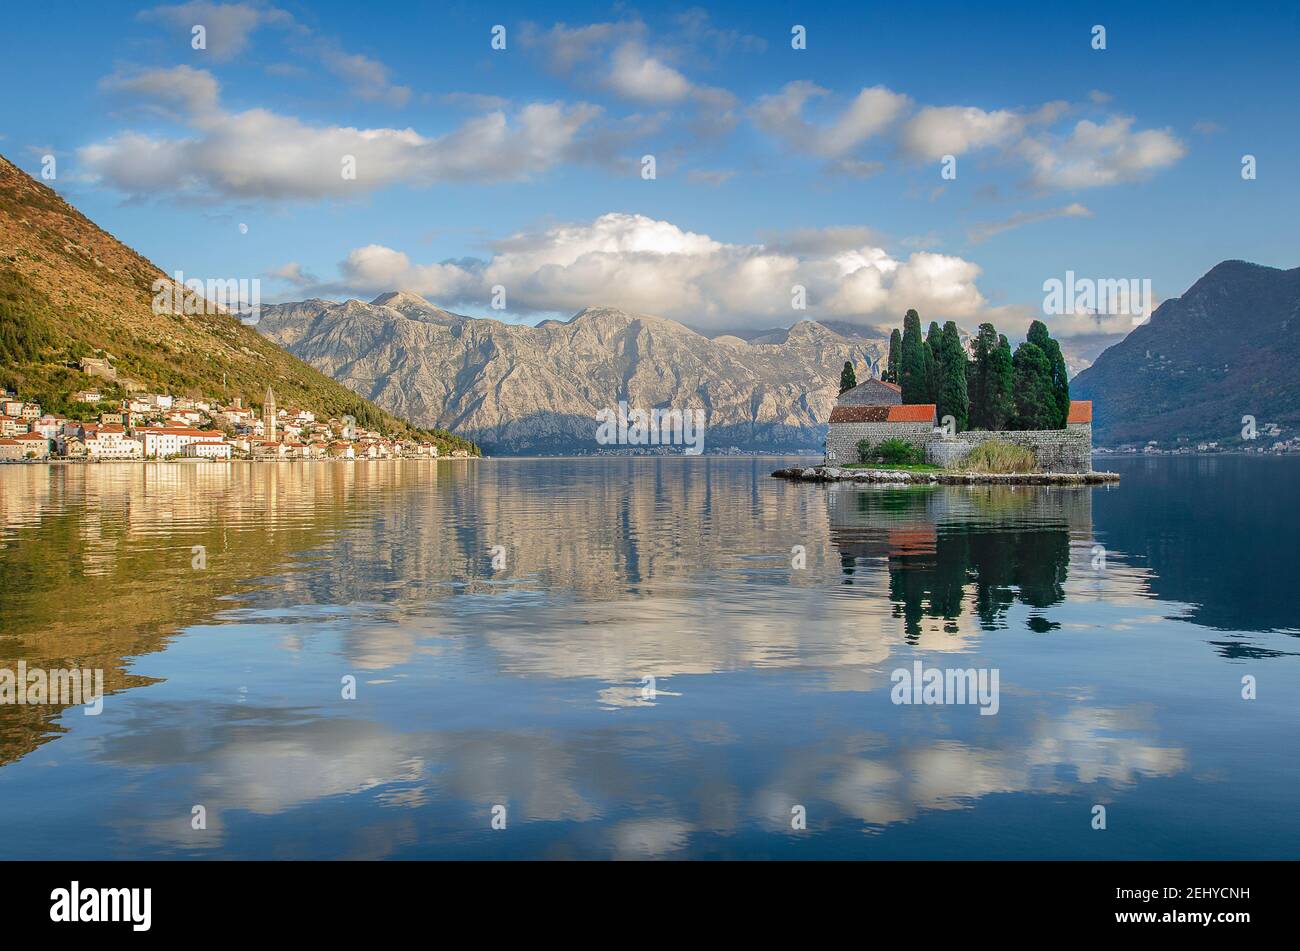 St. George Island und Perast Town mit Mount Lovcen in der Ferne, Kotor Bay, Montenegro Stockfoto